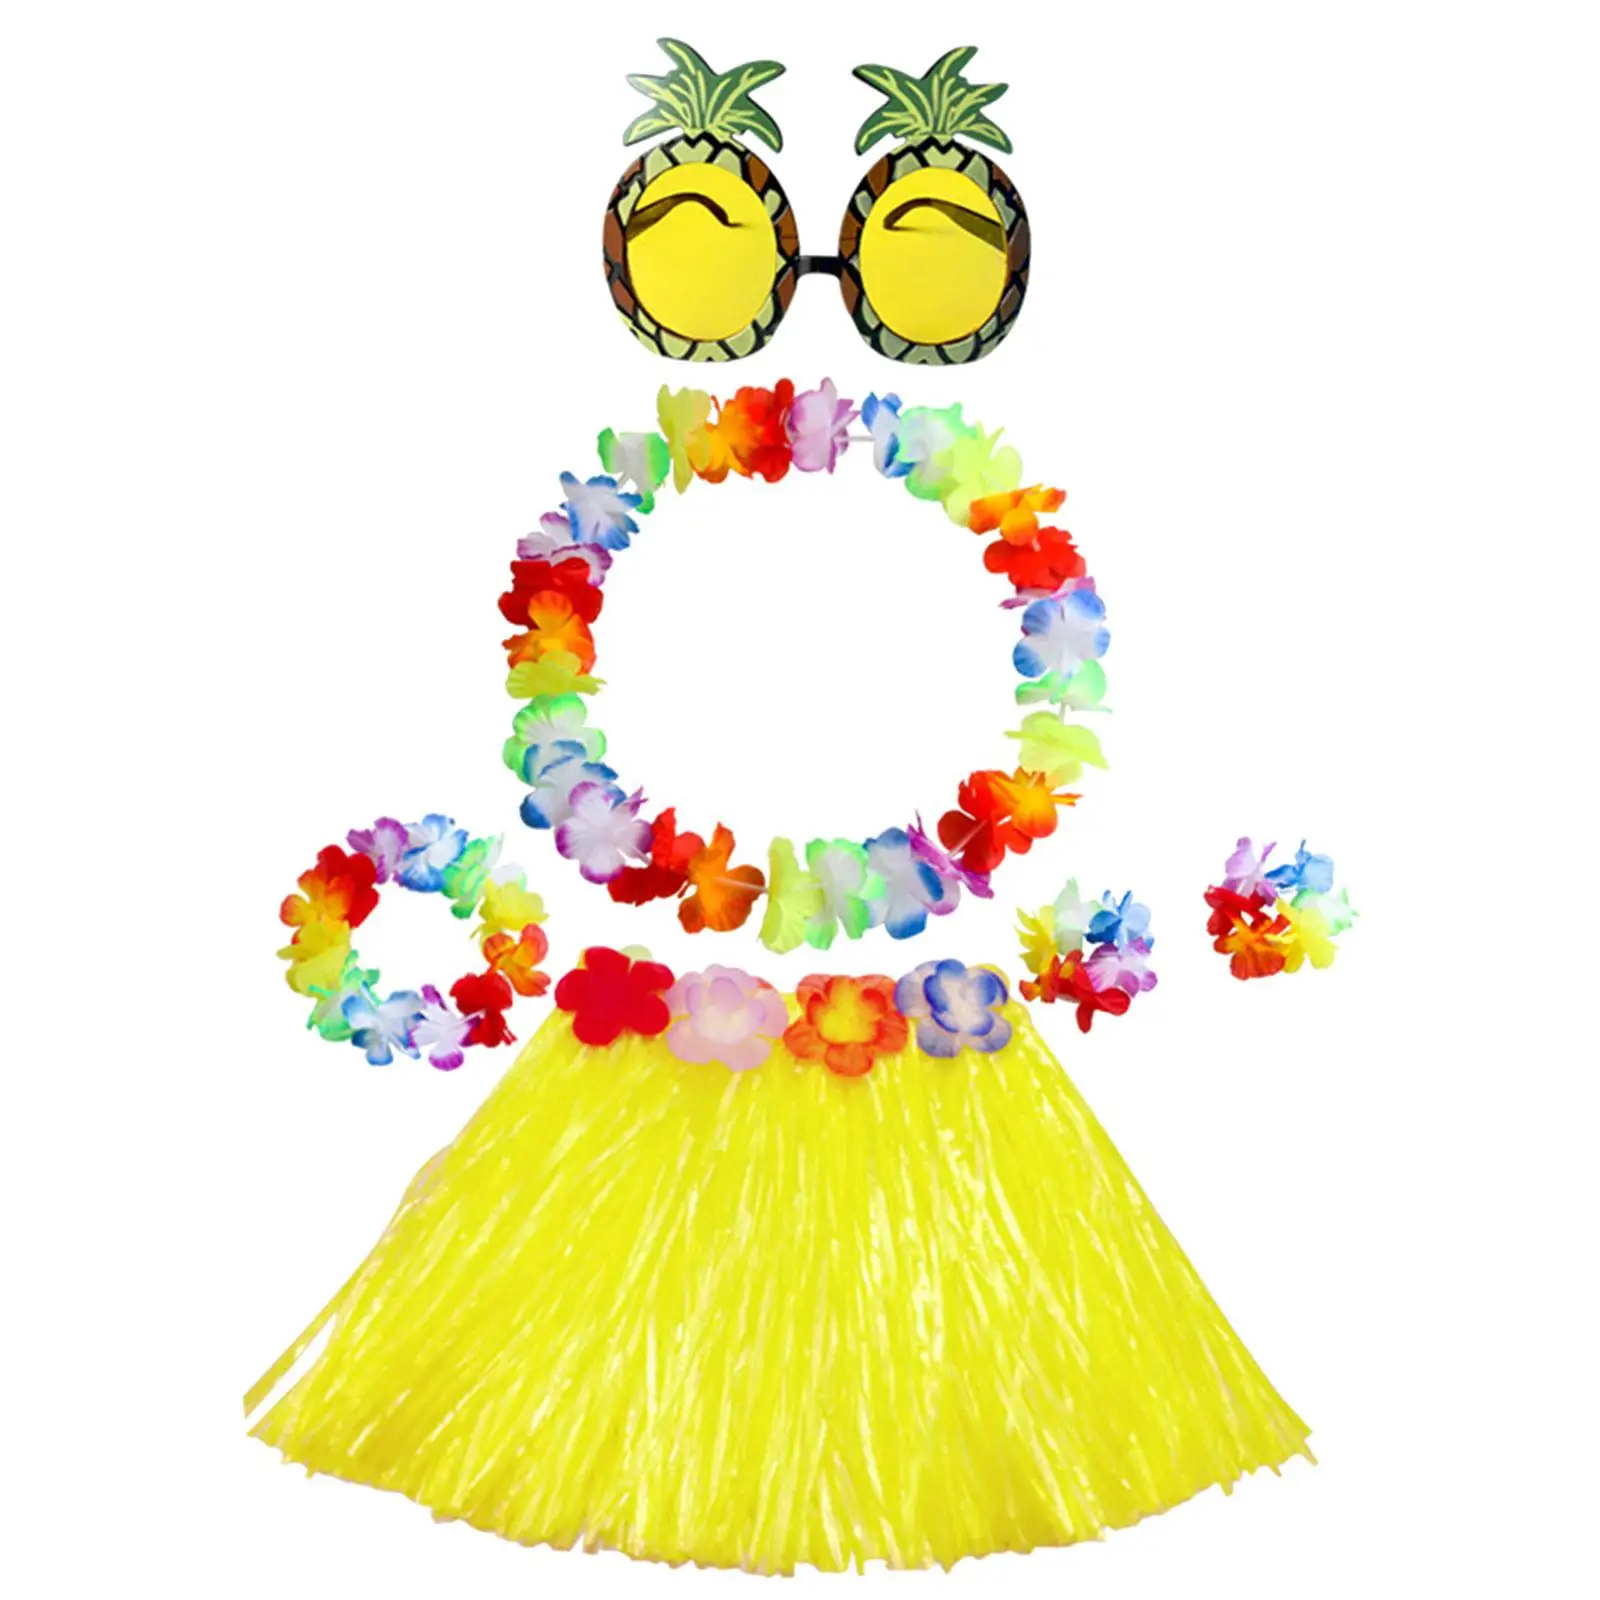 Hawaiian Grass Skirt Ladies Dress up Novelty Necklace for Party Favors Kids Girls Women Dance Performance Tropical Hawaiian